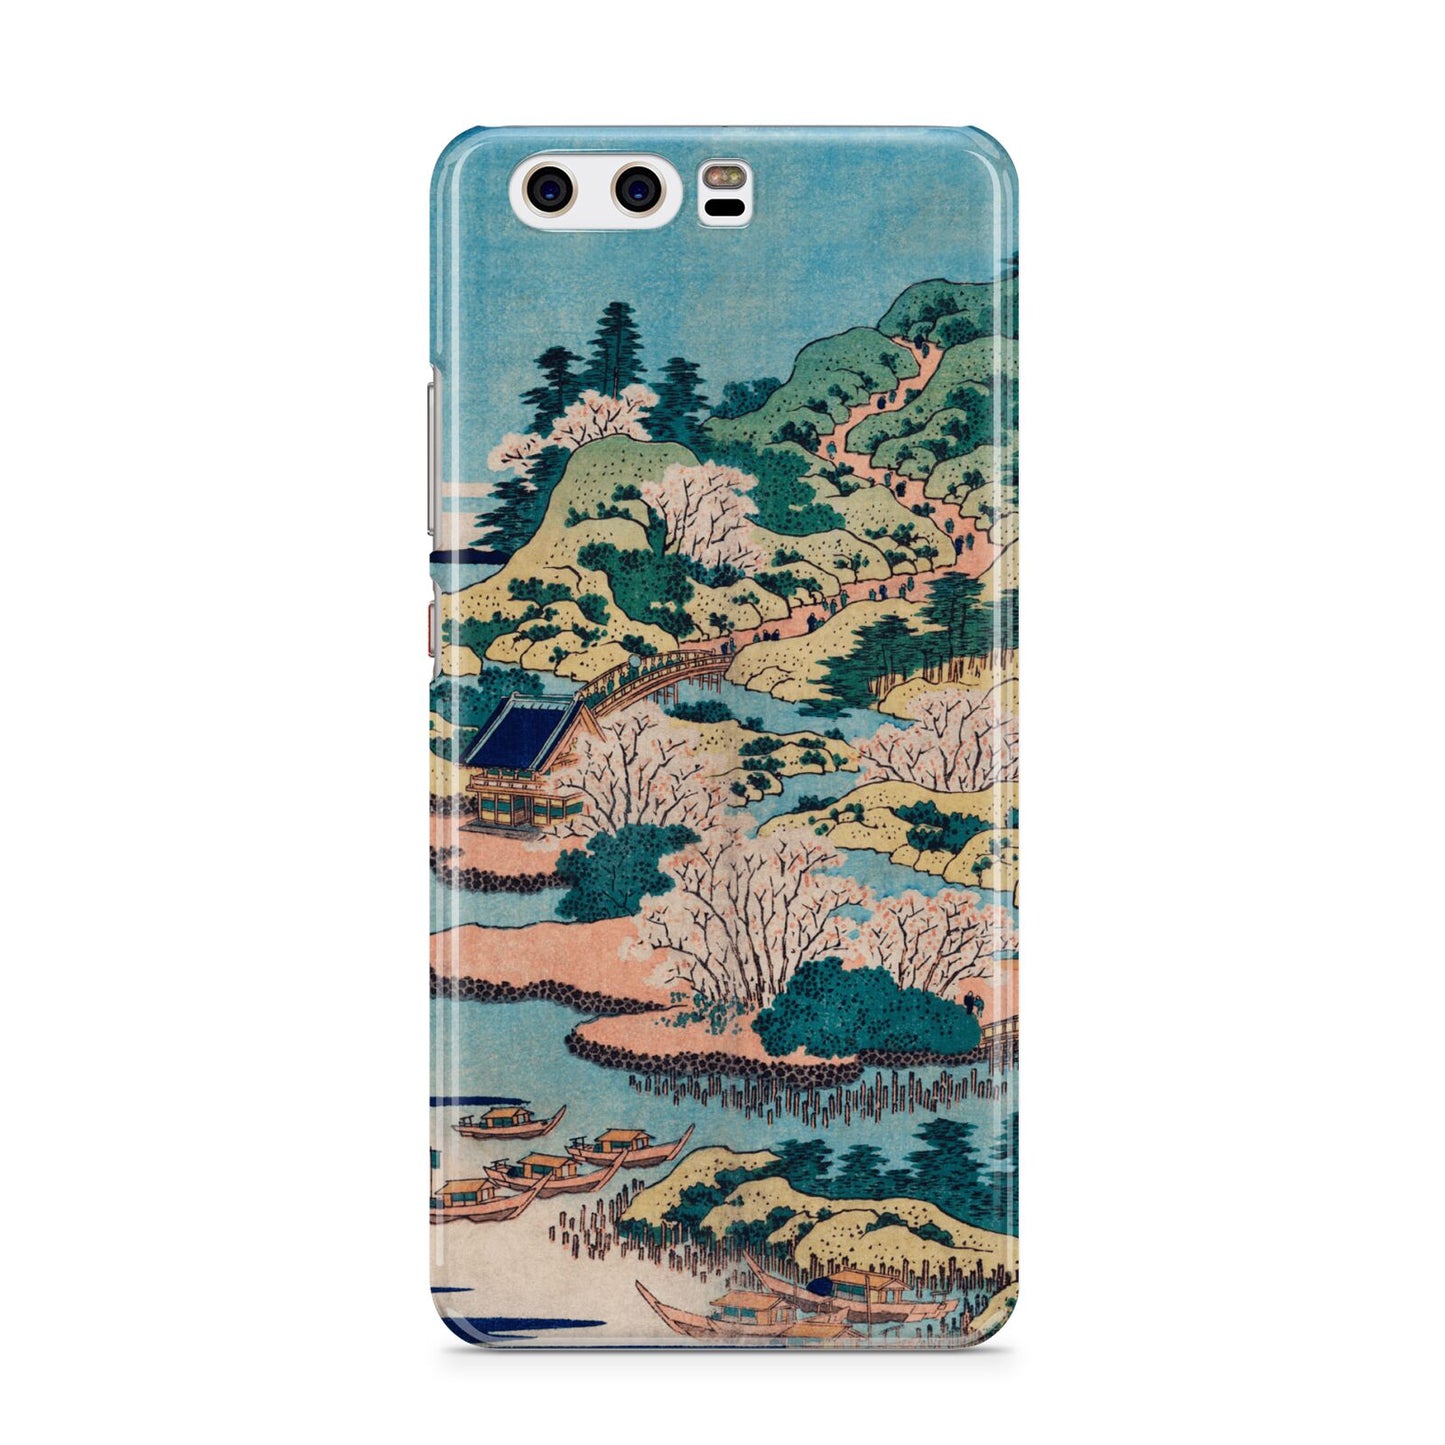 Coastal Community By Katsushika Hokusai Huawei P10 Phone Case